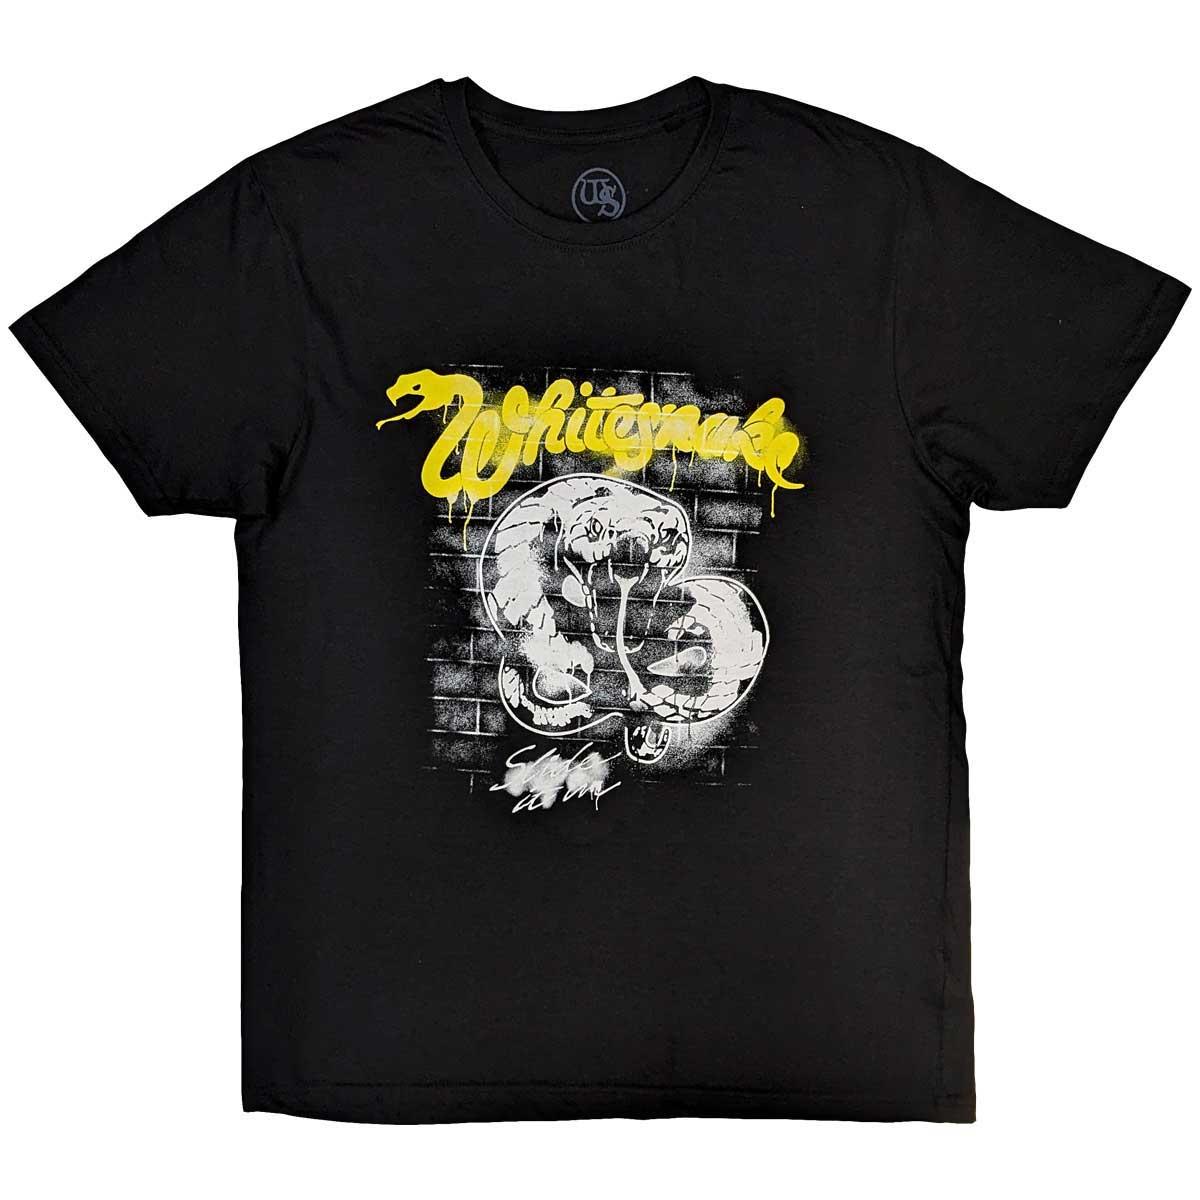 (ホワイトスネイク) Whitesnake オフィシャル商品 ユニセックス Graffiti Tシャツ コットン 半袖 トップス 【海外通販】